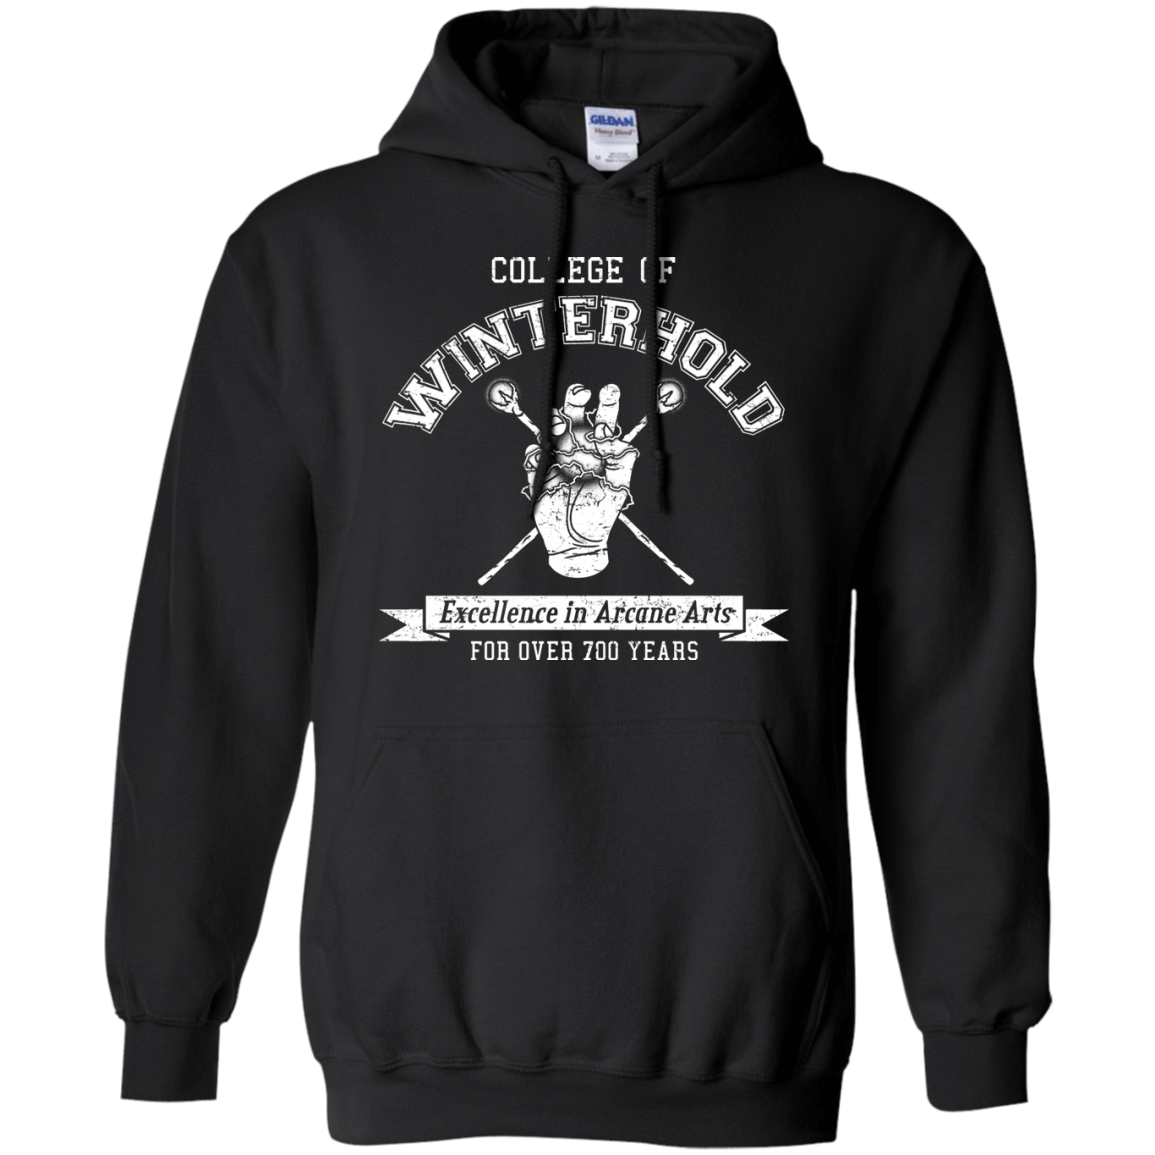 Mens_Hoodie Sweatshirts Black / Small College of Winterhold Pullover Hoodie